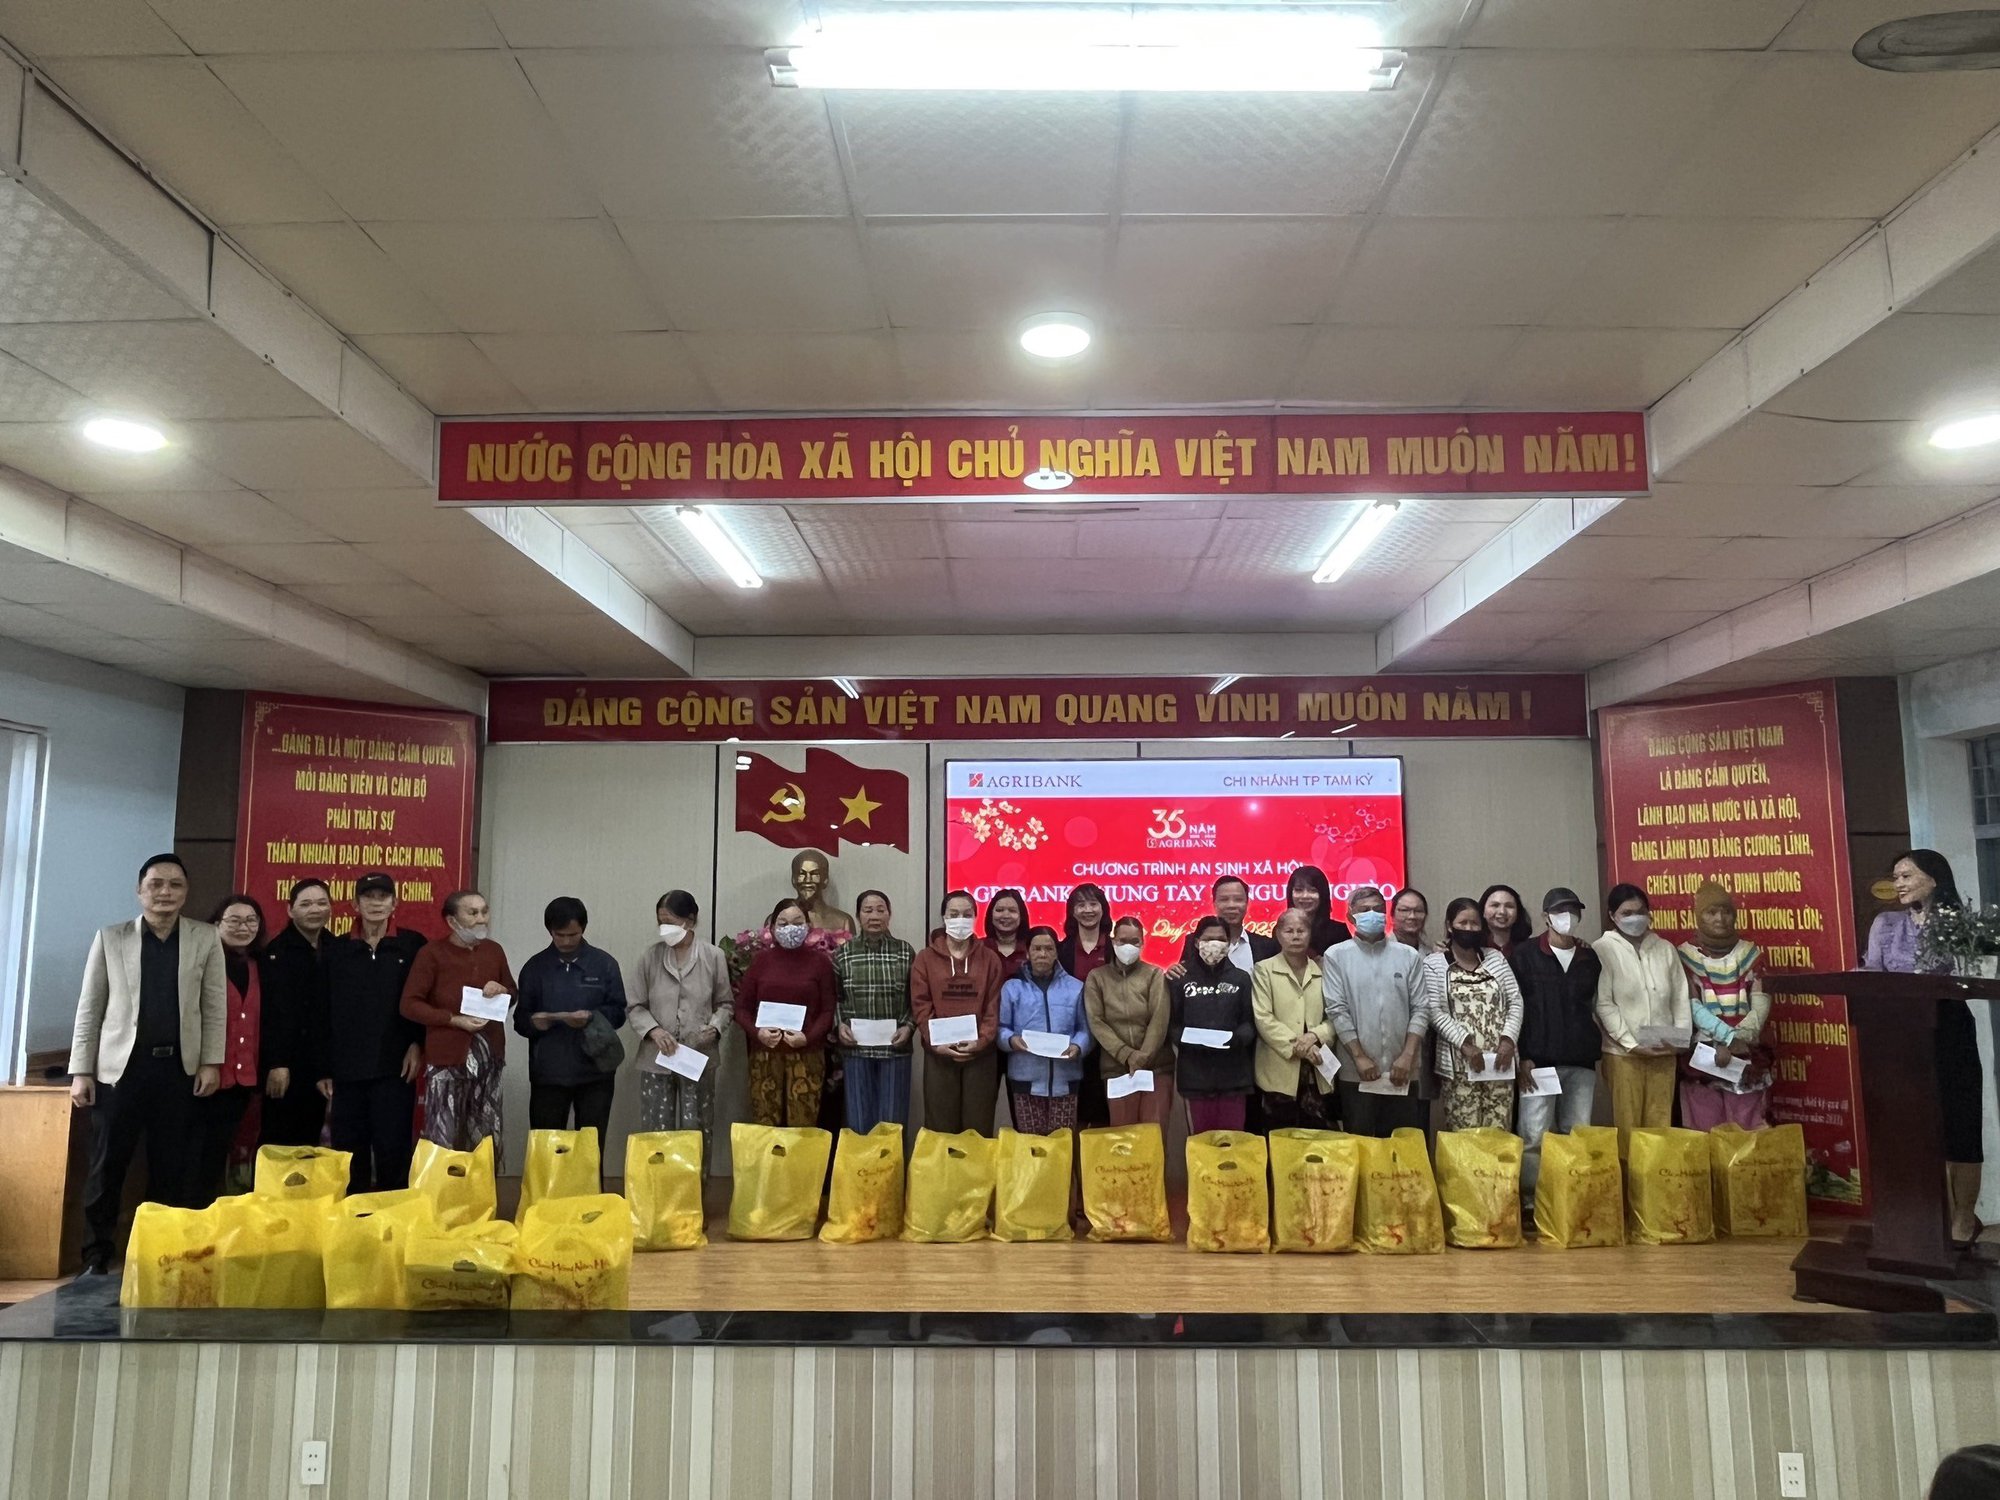 Agribank Chi nhánh tỉnh Quảng Nam tiếp sức cho người nghèo đón Tết - Ảnh 1.